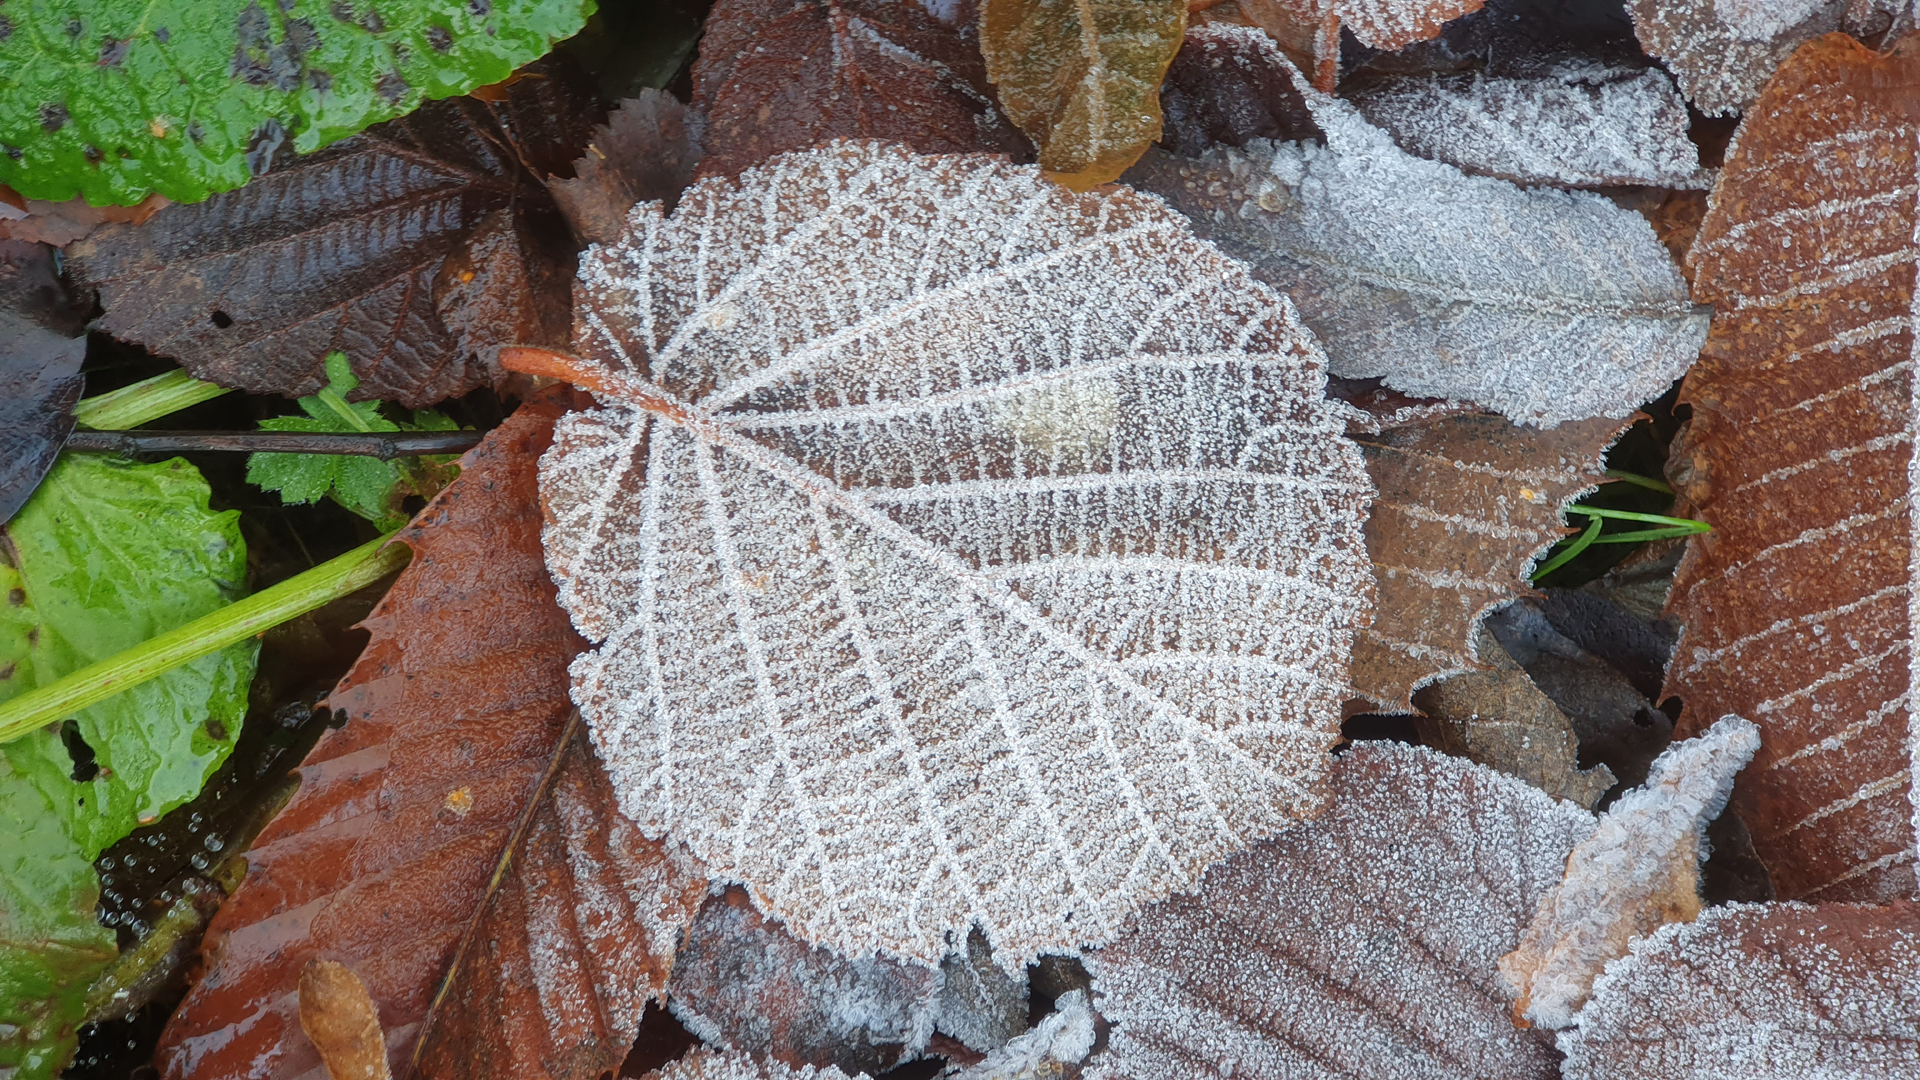 Fotostrecke Herbst Abbildung 41: Erster Frost